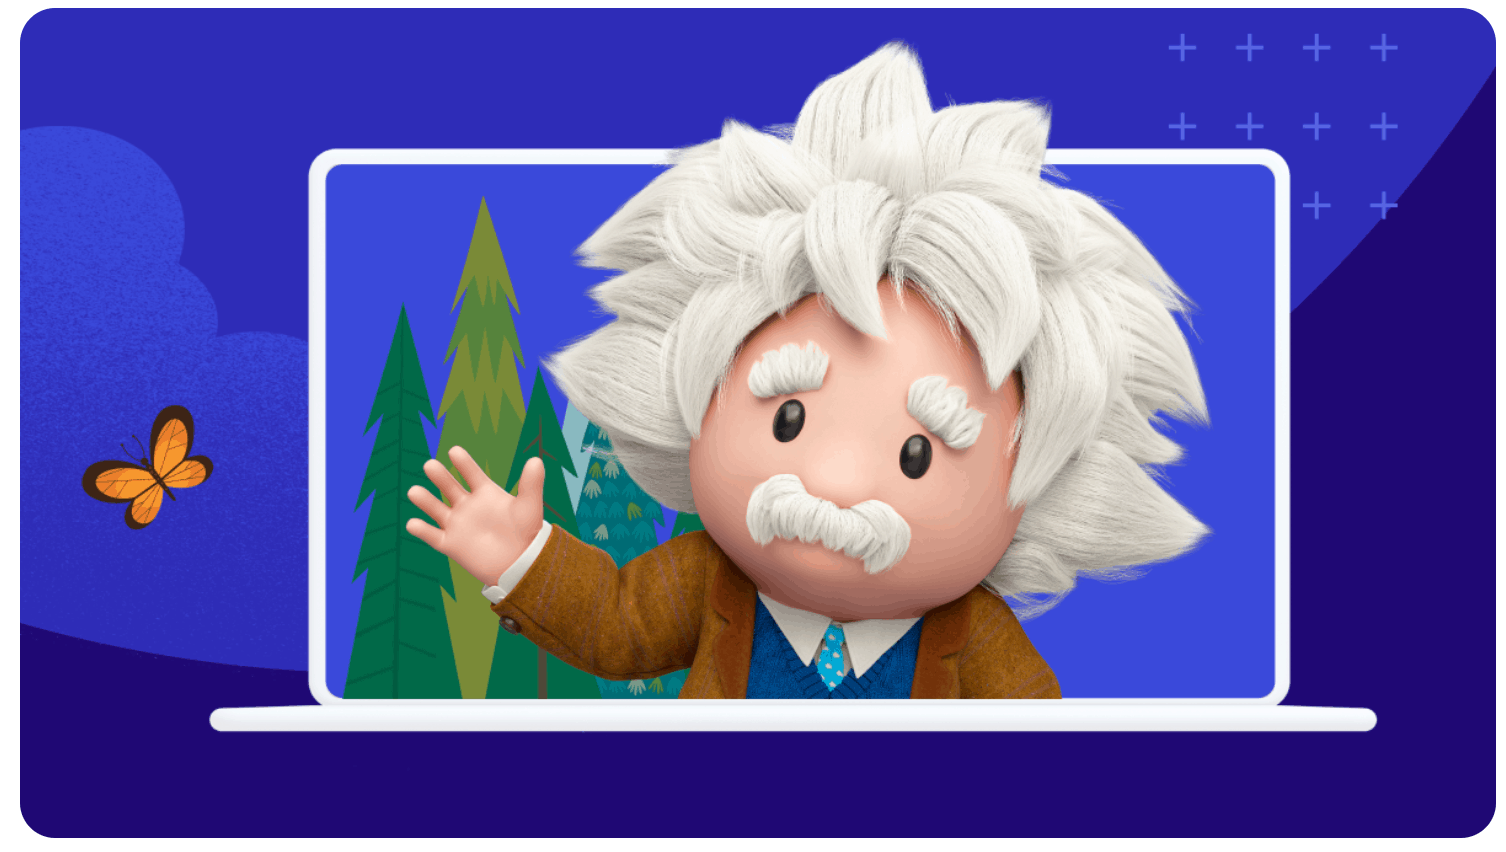 Salesforce Announces Einstein Gpt